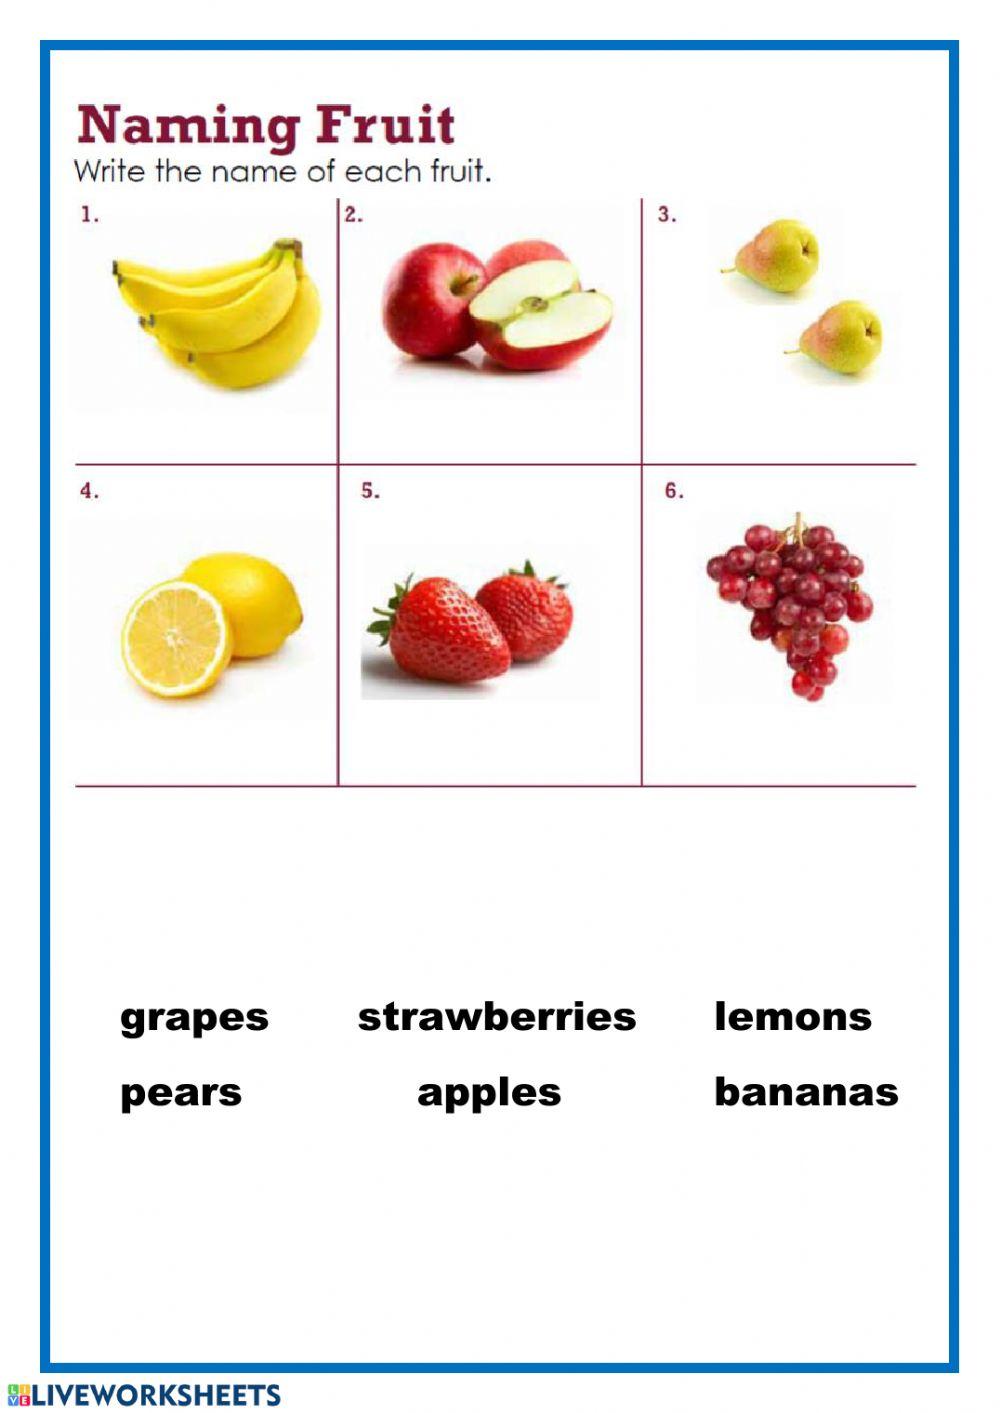 Naming fruits - 1